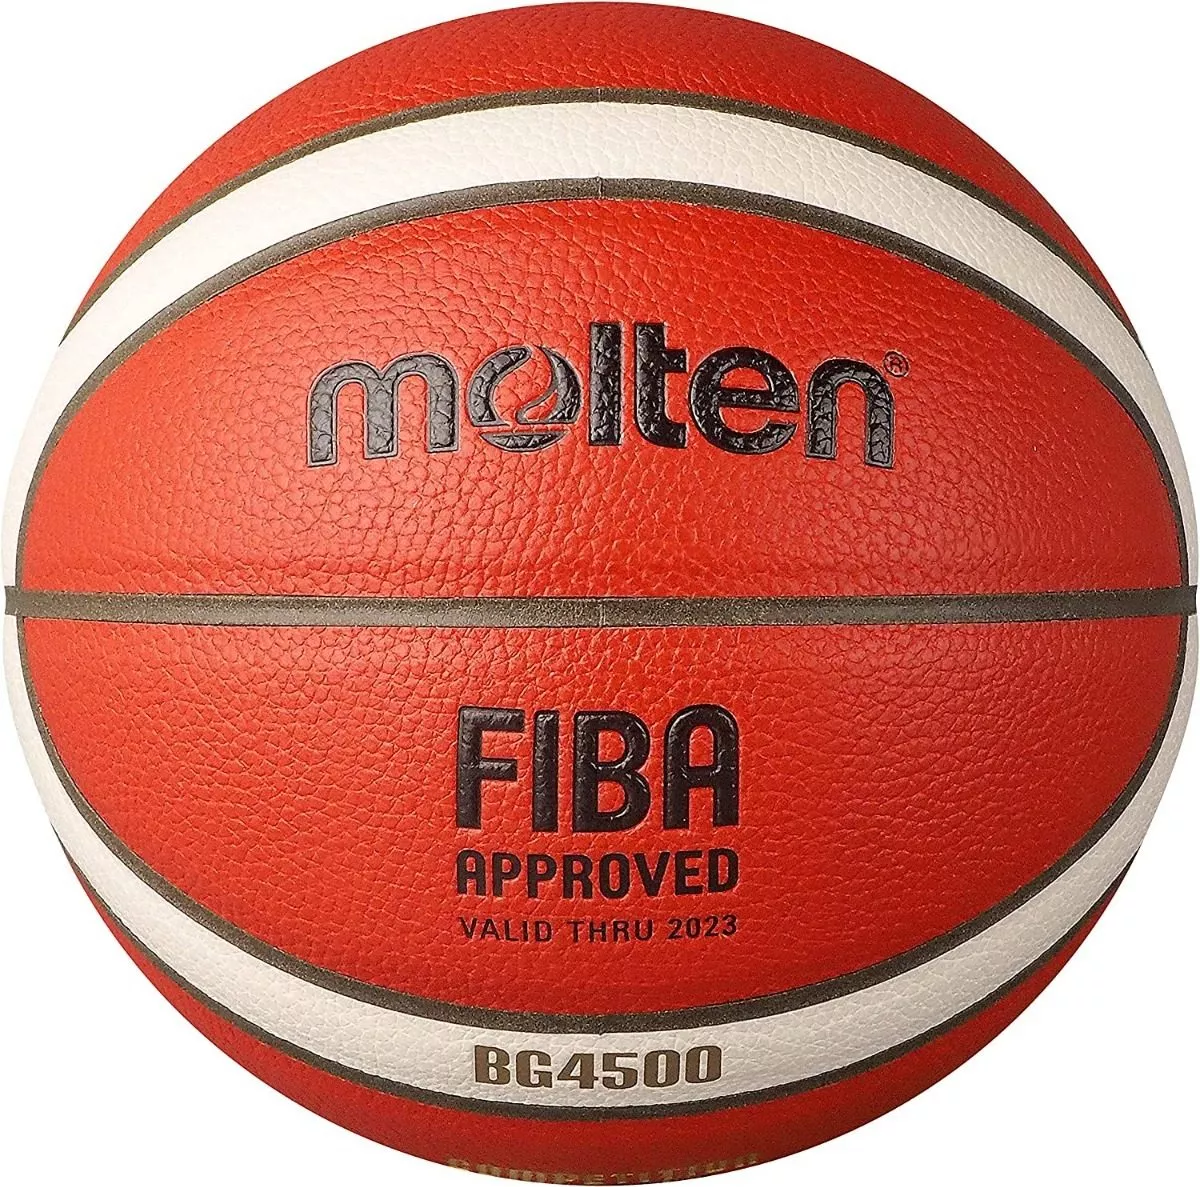 Primera imagen para búsqueda de balon de basquetbol molten 7 bg3000